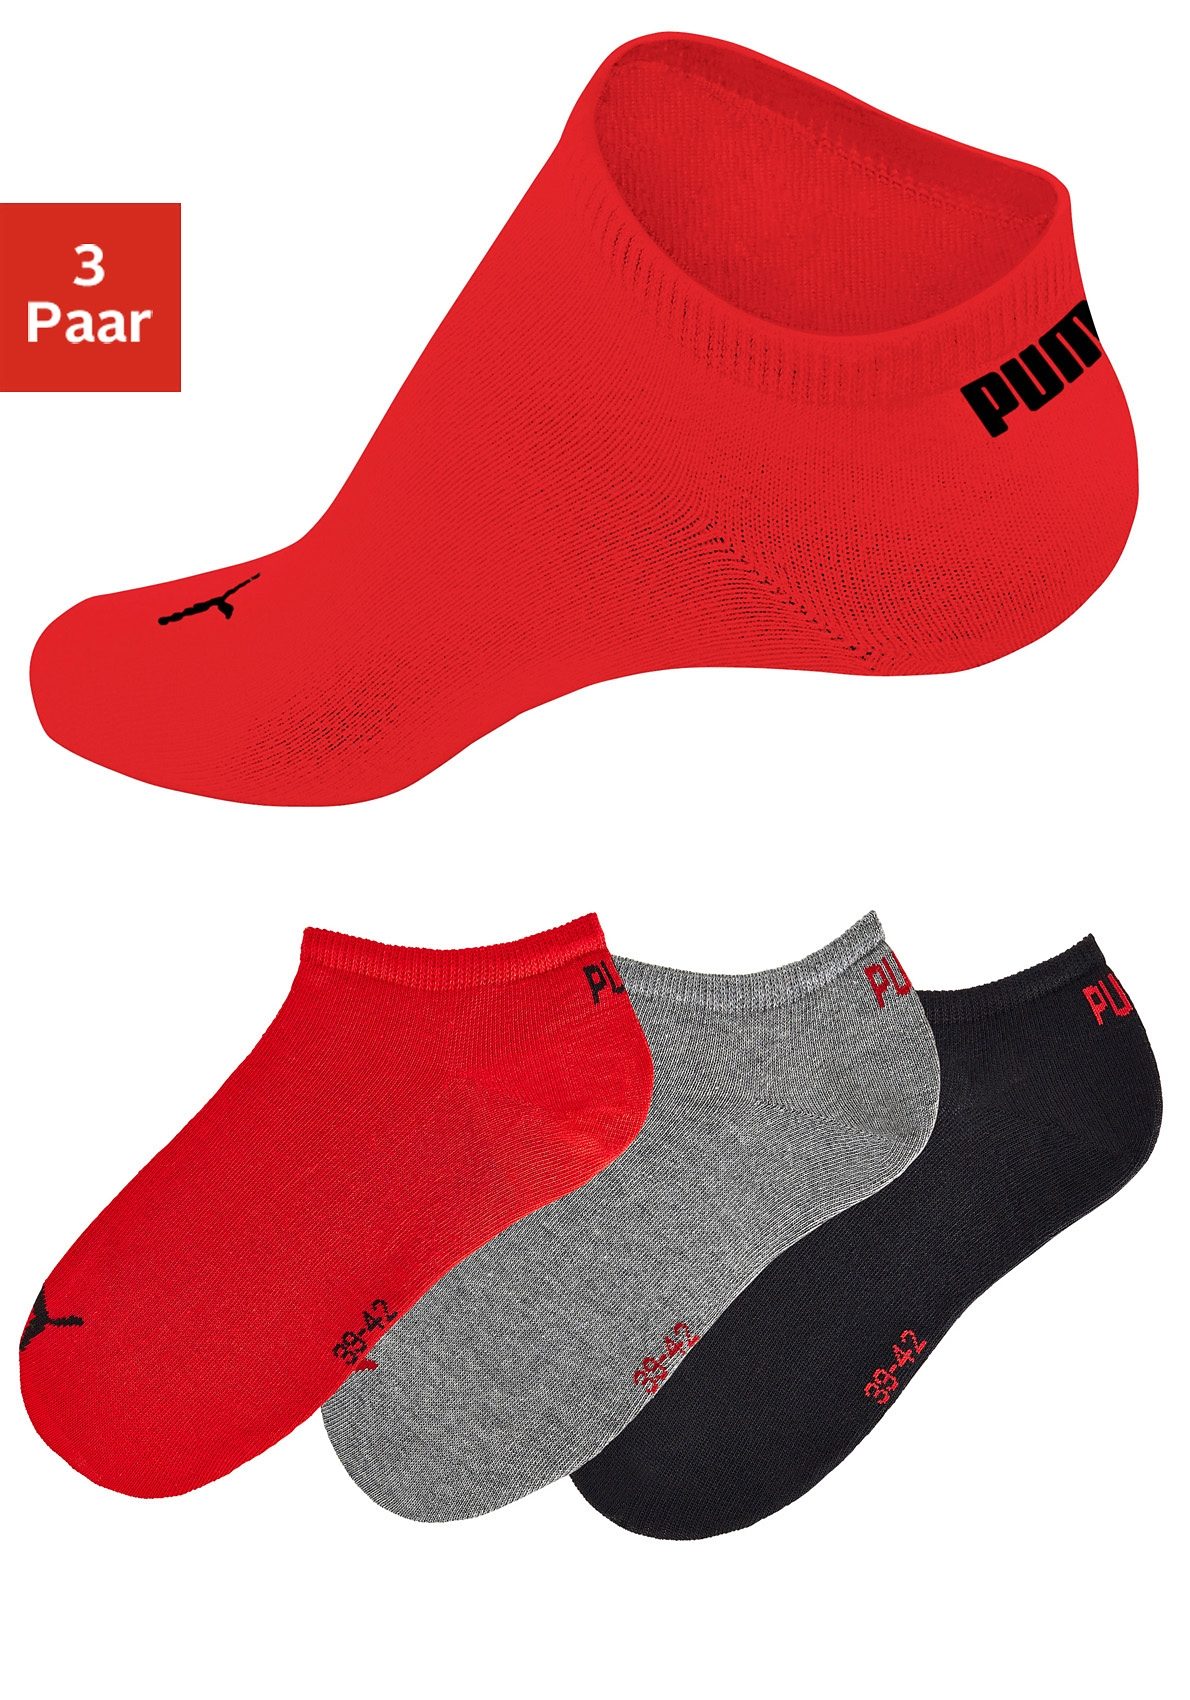 Rote Socken online kaufen | OTTO